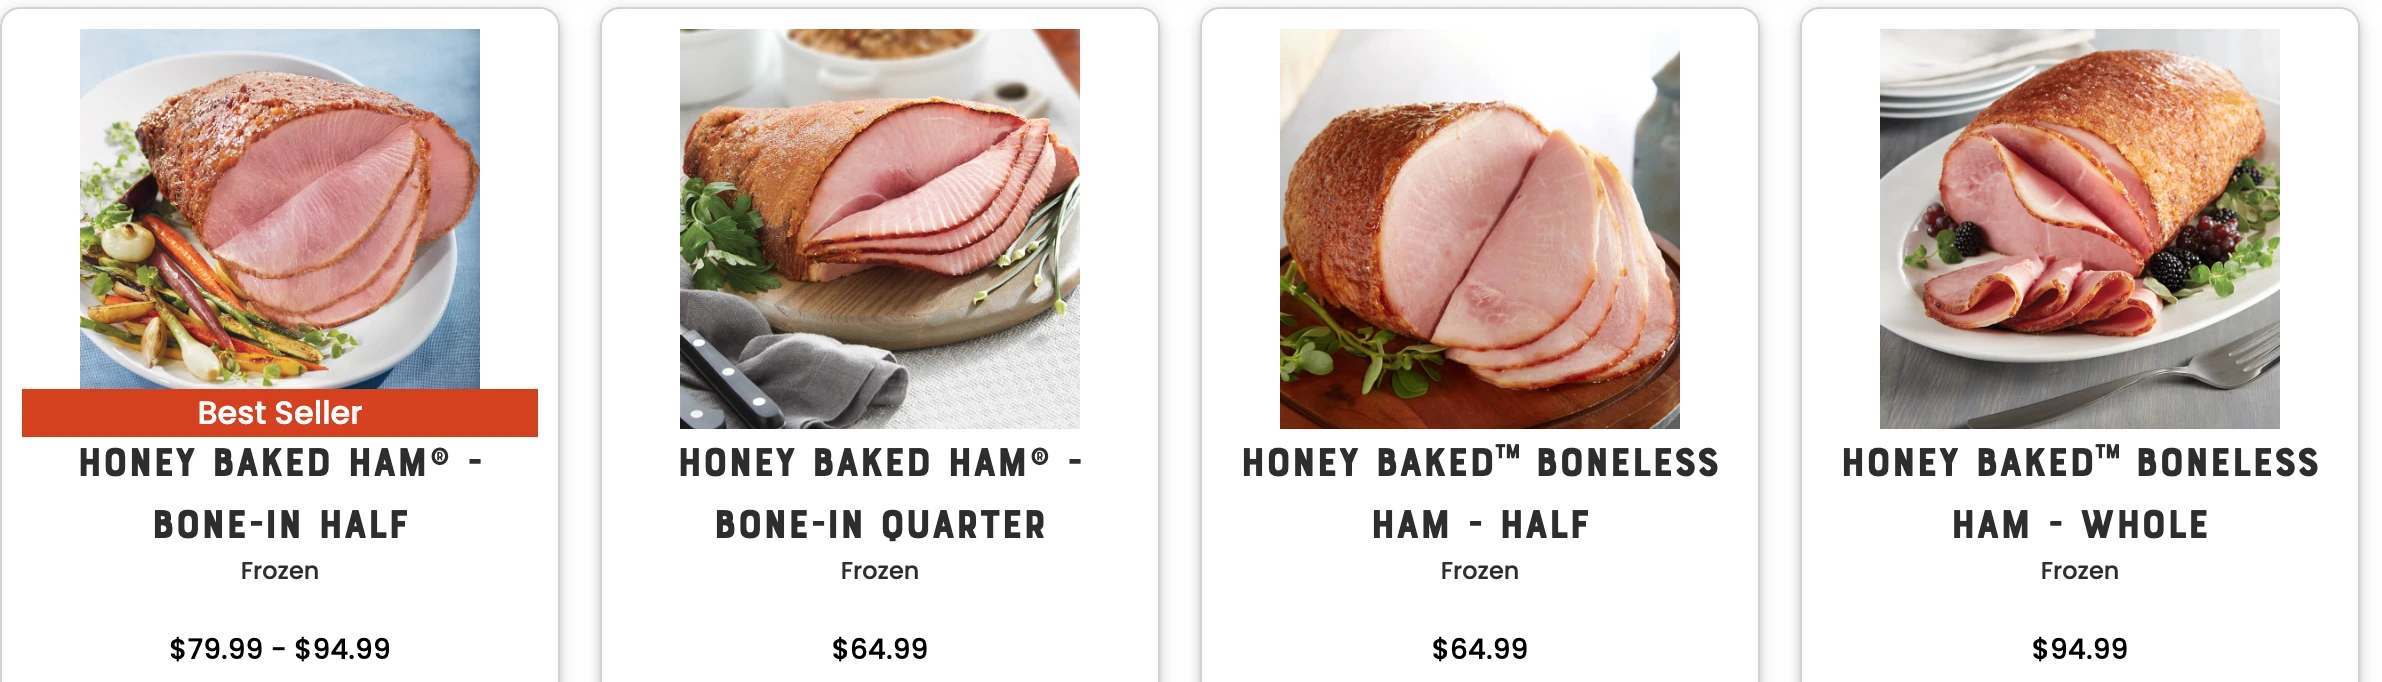 honey baked hams